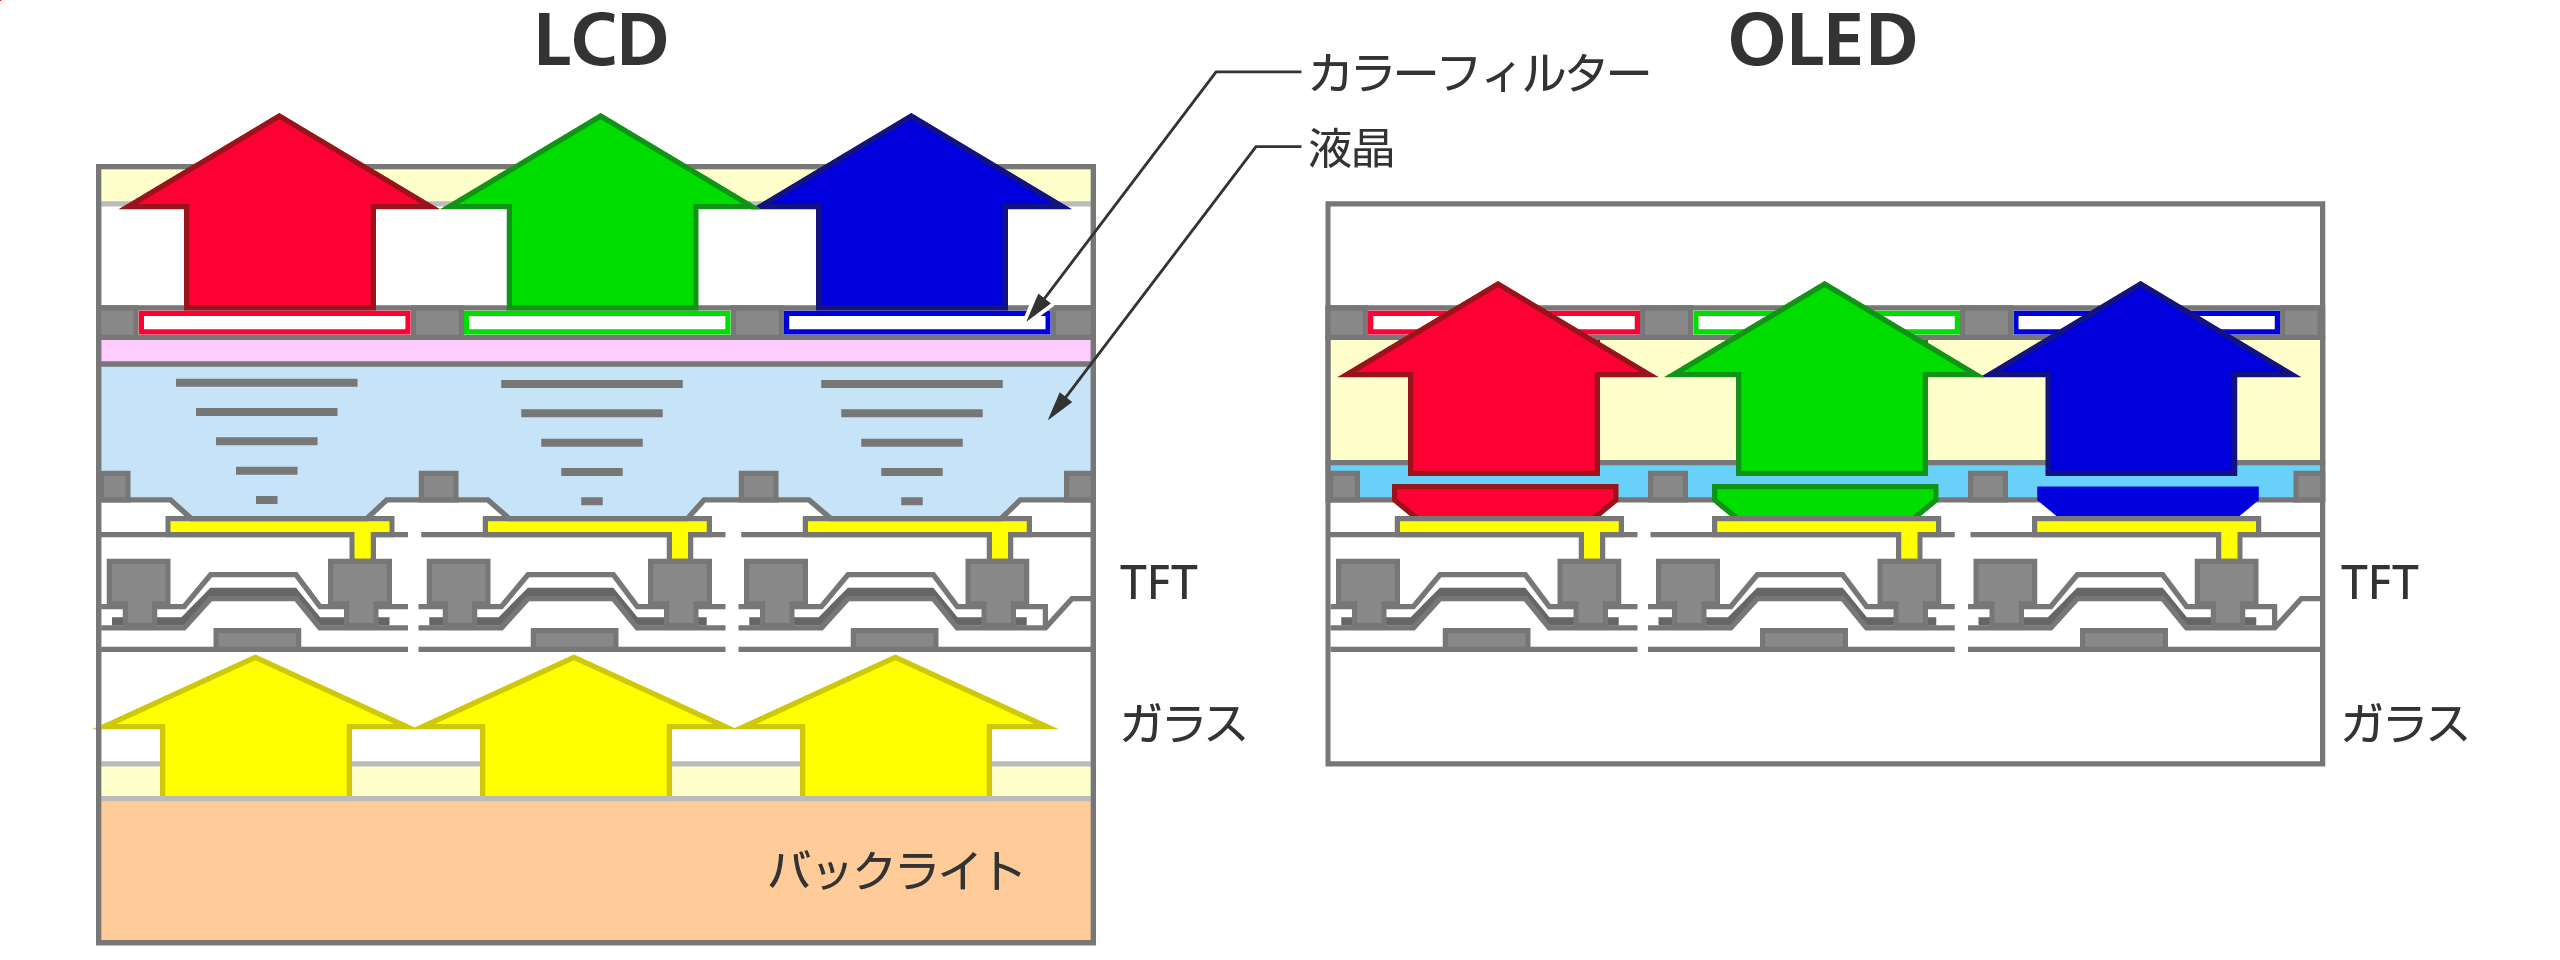 解説図。LCDとOLEDの構造。どちらも、ひとつの画素は赤・緑・青の3色で構成され、薄膜トランジスタが付いている。